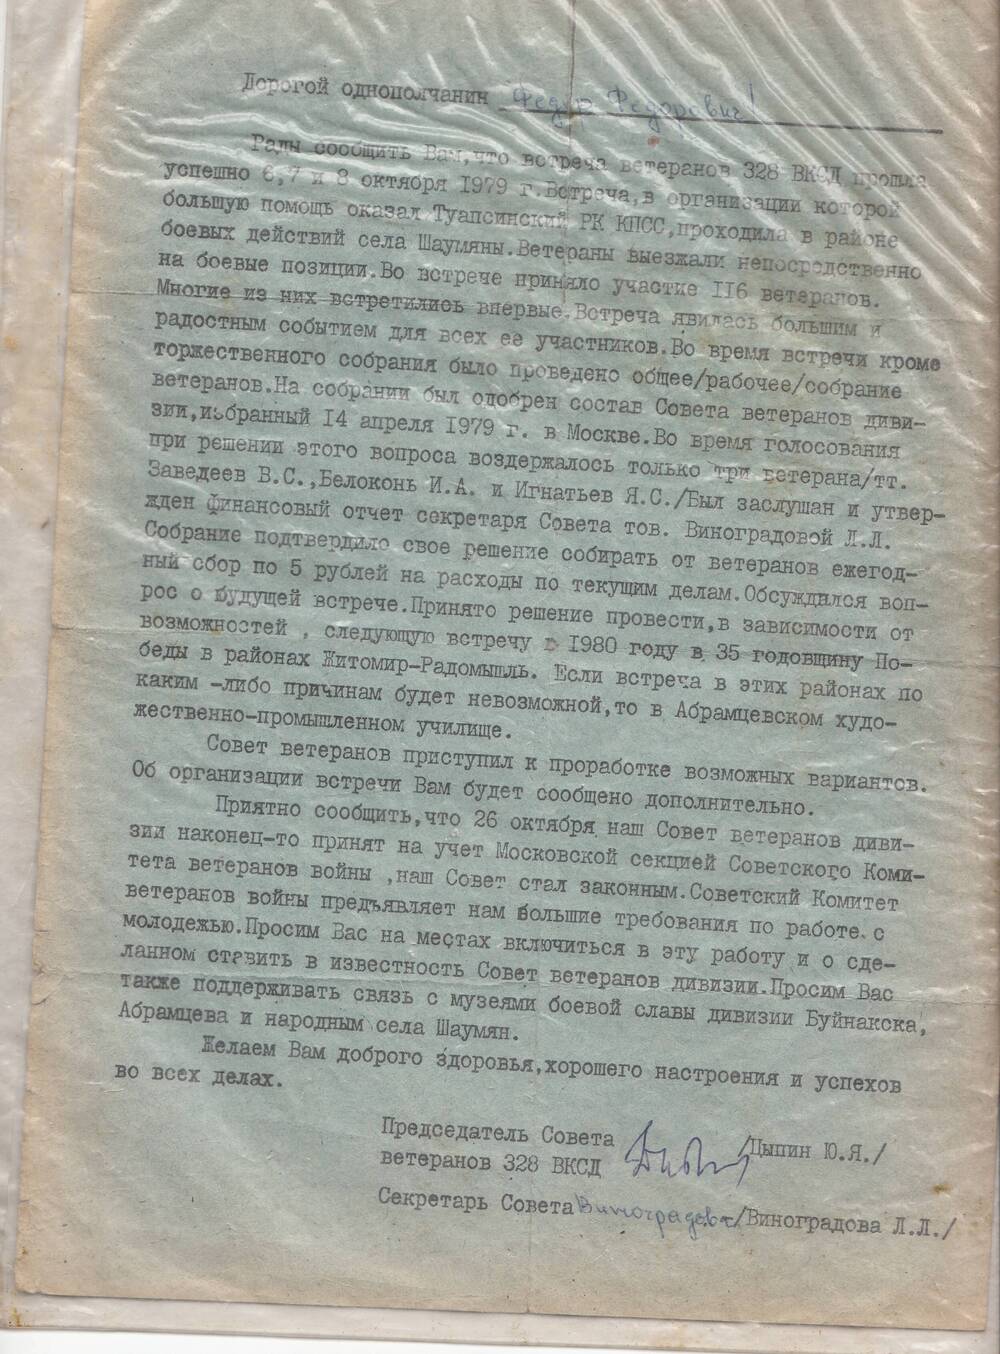 Письмо председателя Совета ветеранов 328 ВКСД Ю. Я. Цыпина